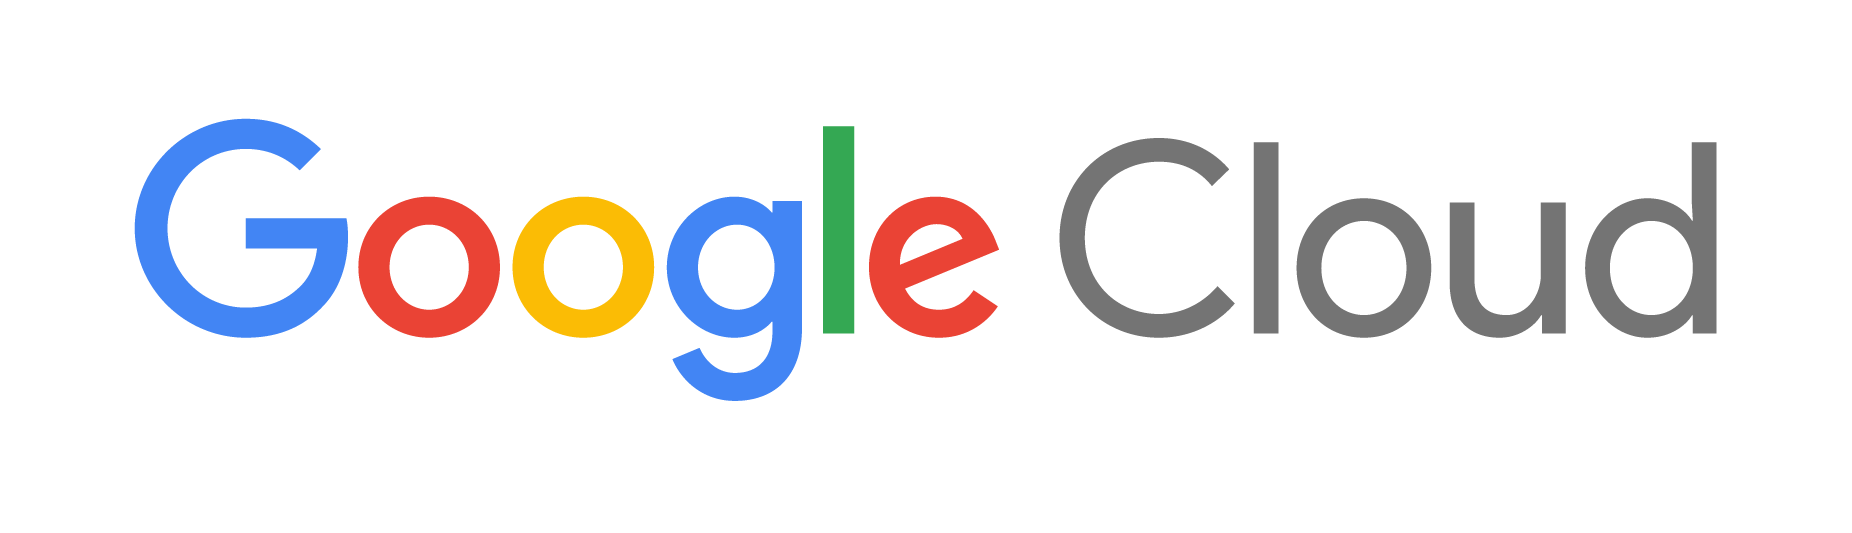 Google png logo. Success stories googlecloudlogocolorpng